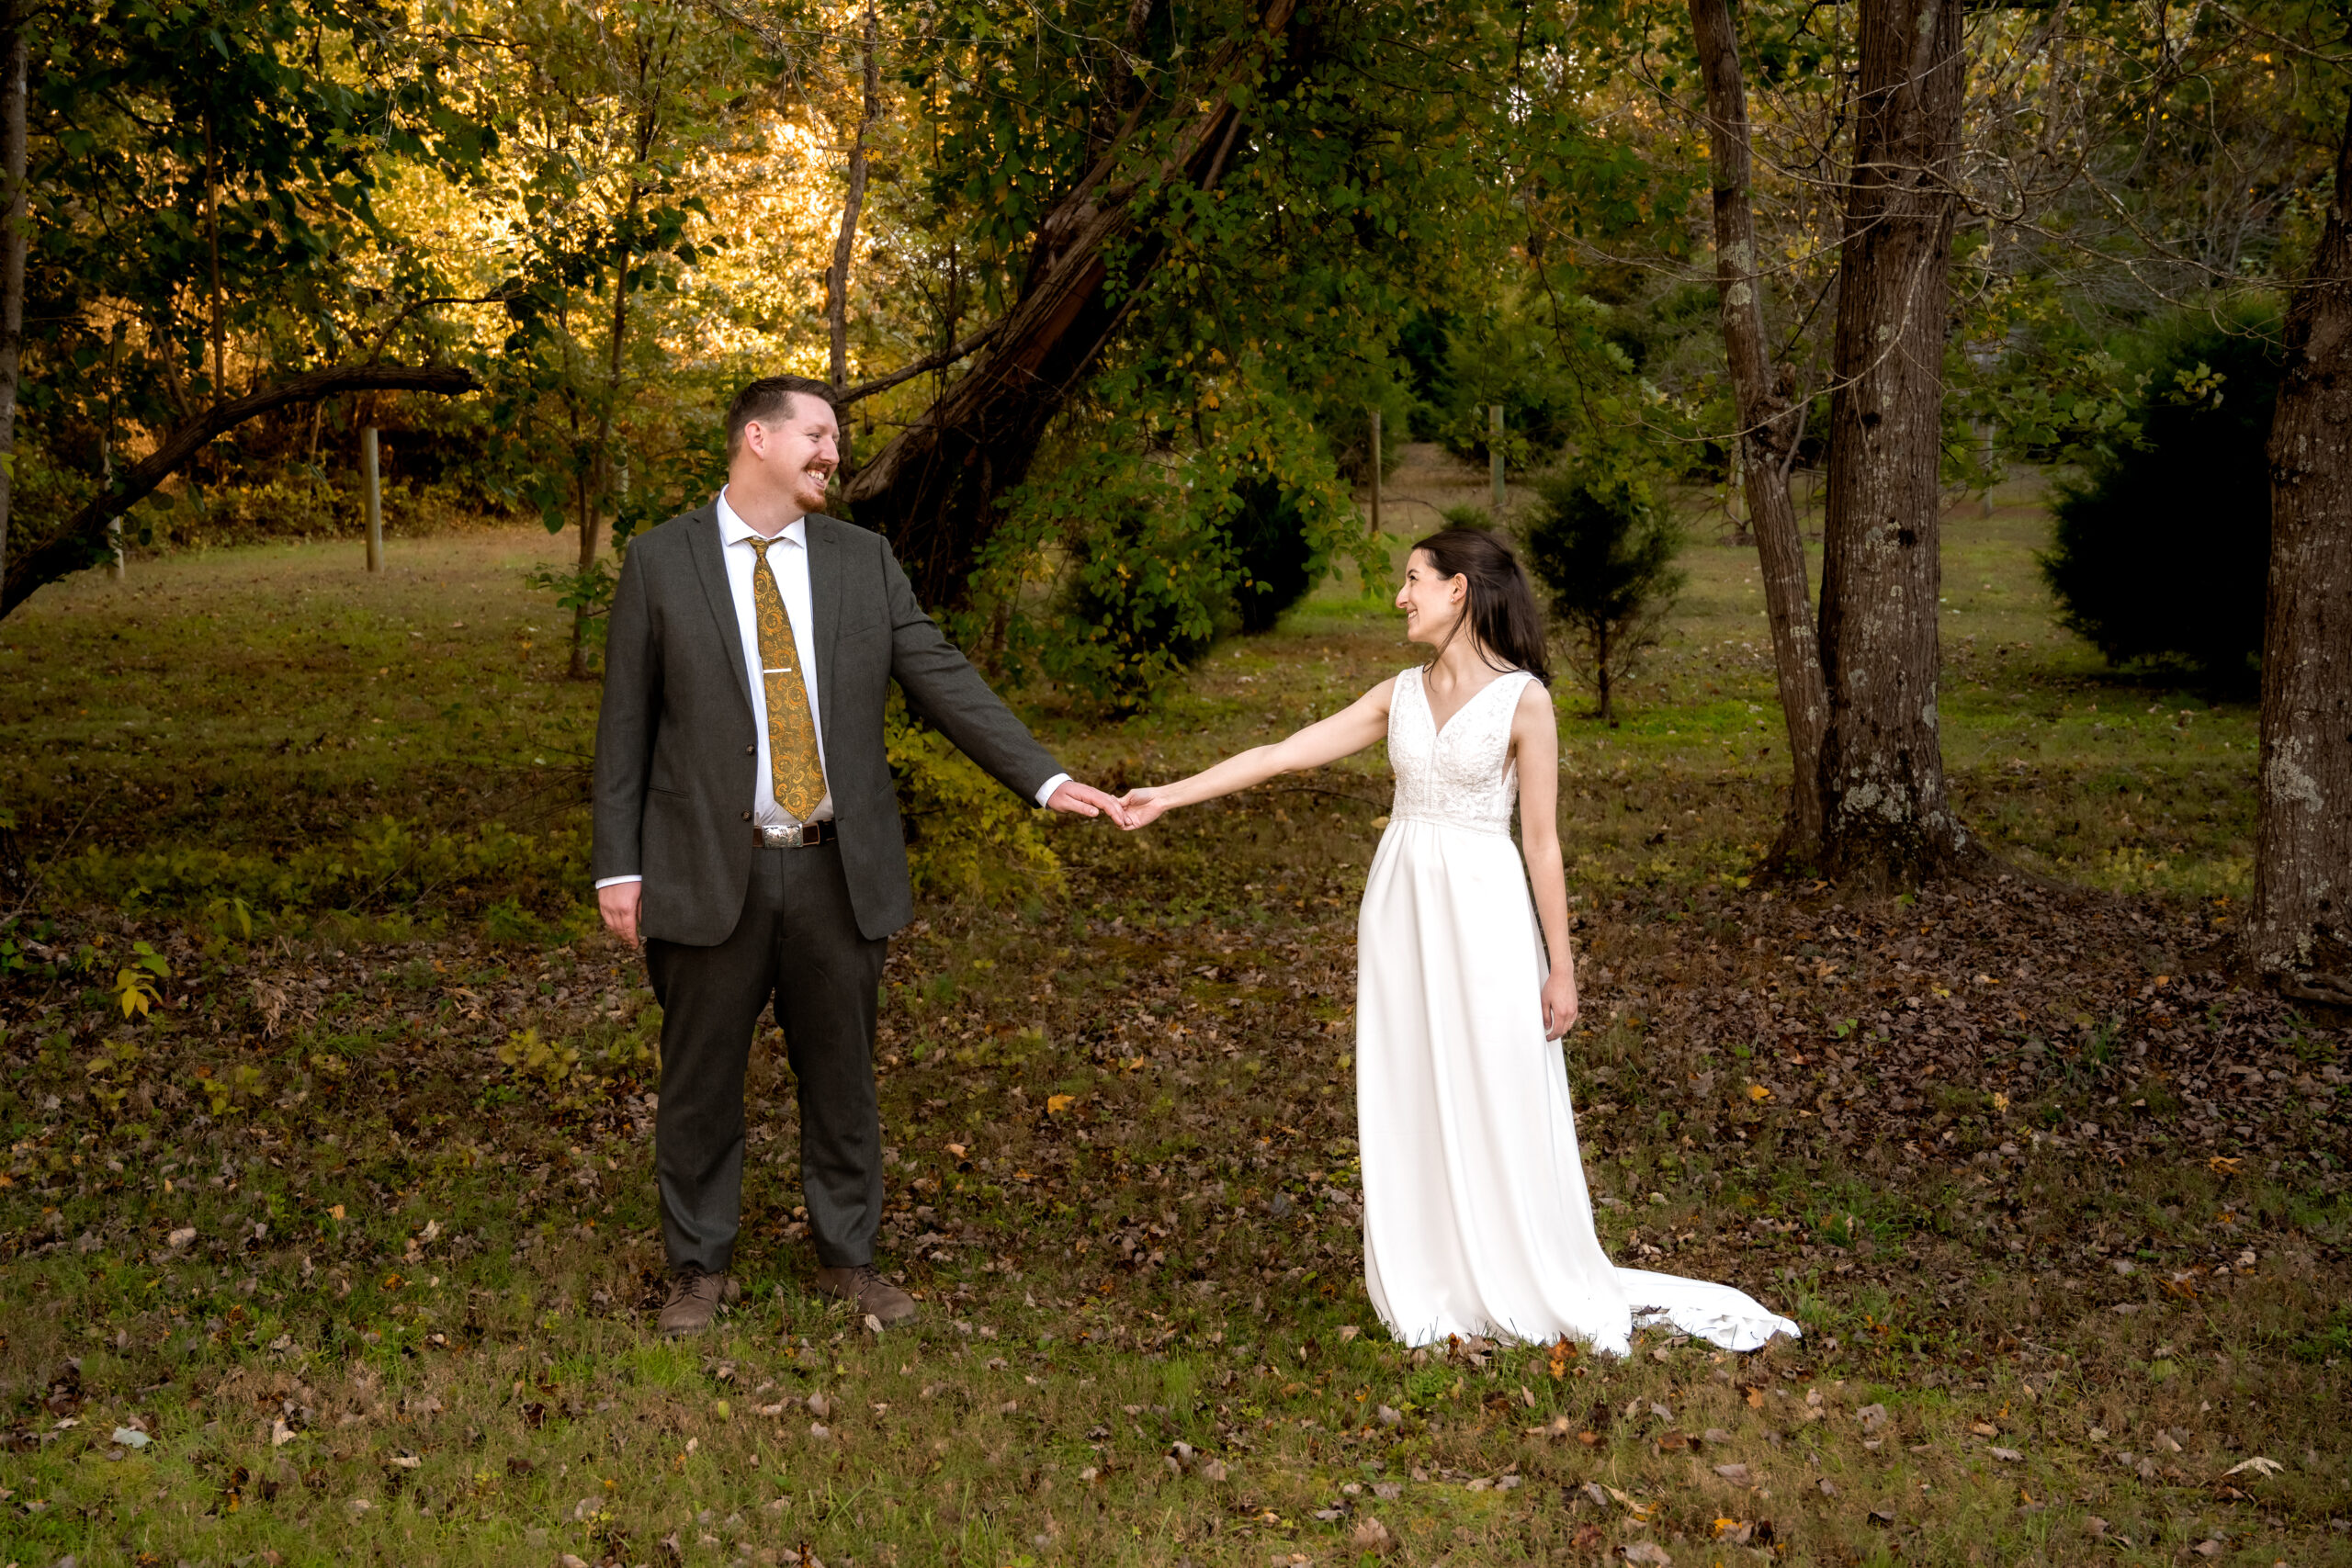 Bride & Groom Arms Extended Holding Hands - Wedding Timeline Blog Post